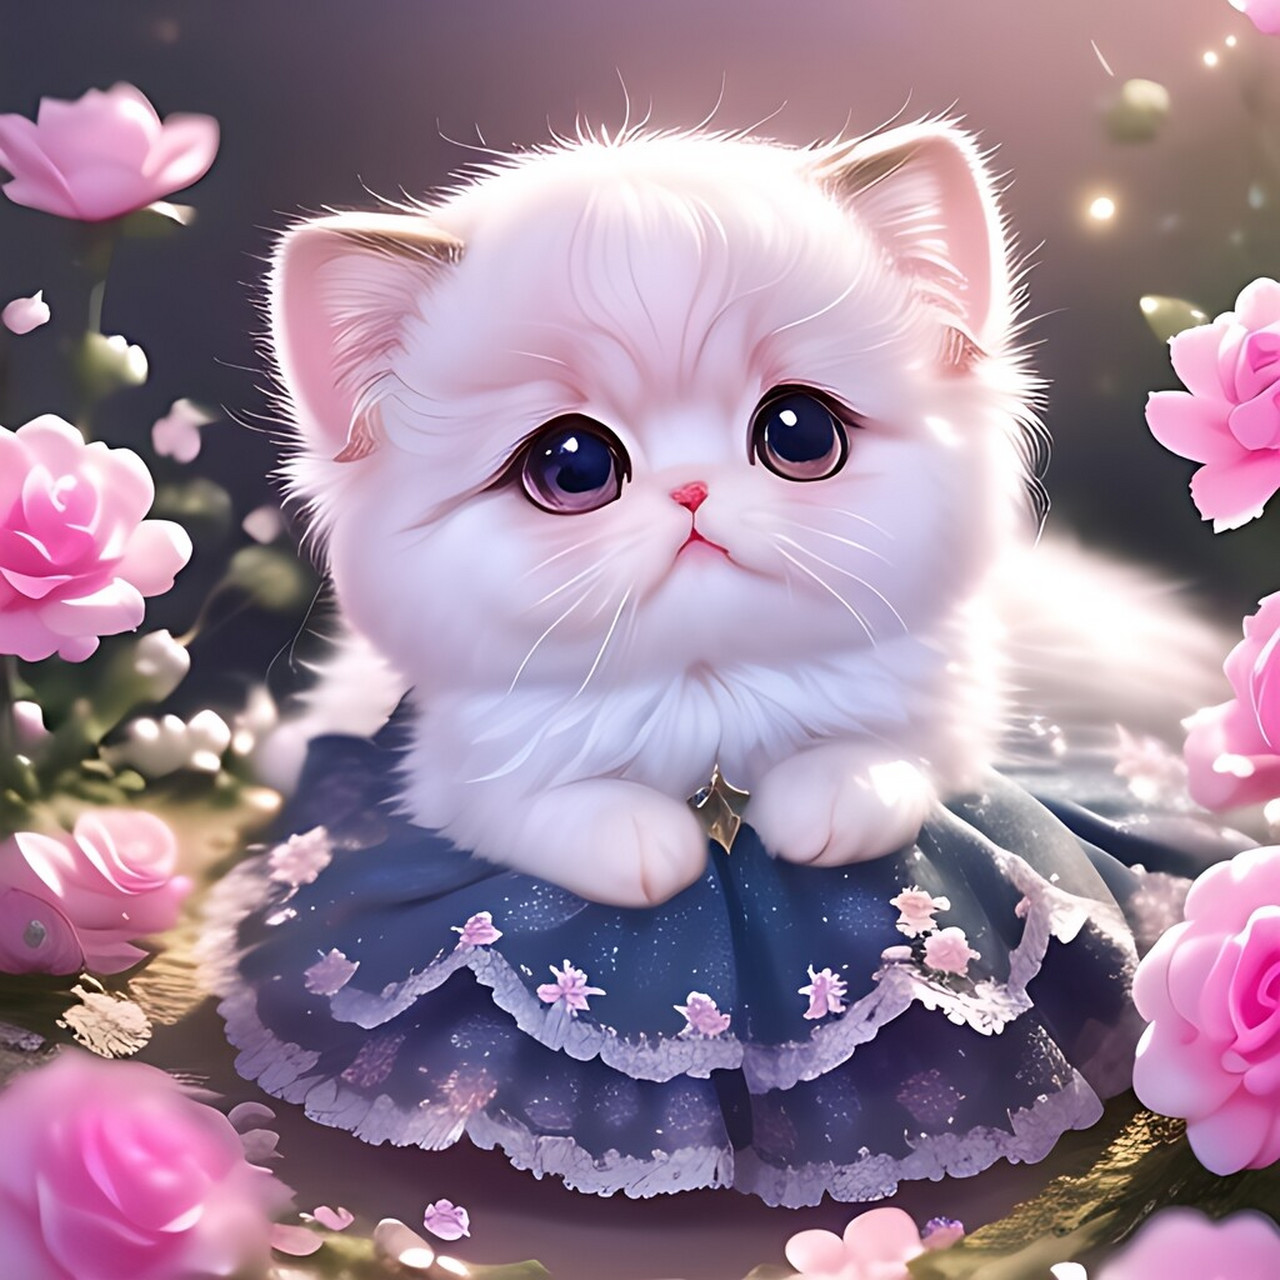 一只可爱的圆乎乎的粉白色波斯猫宝宝